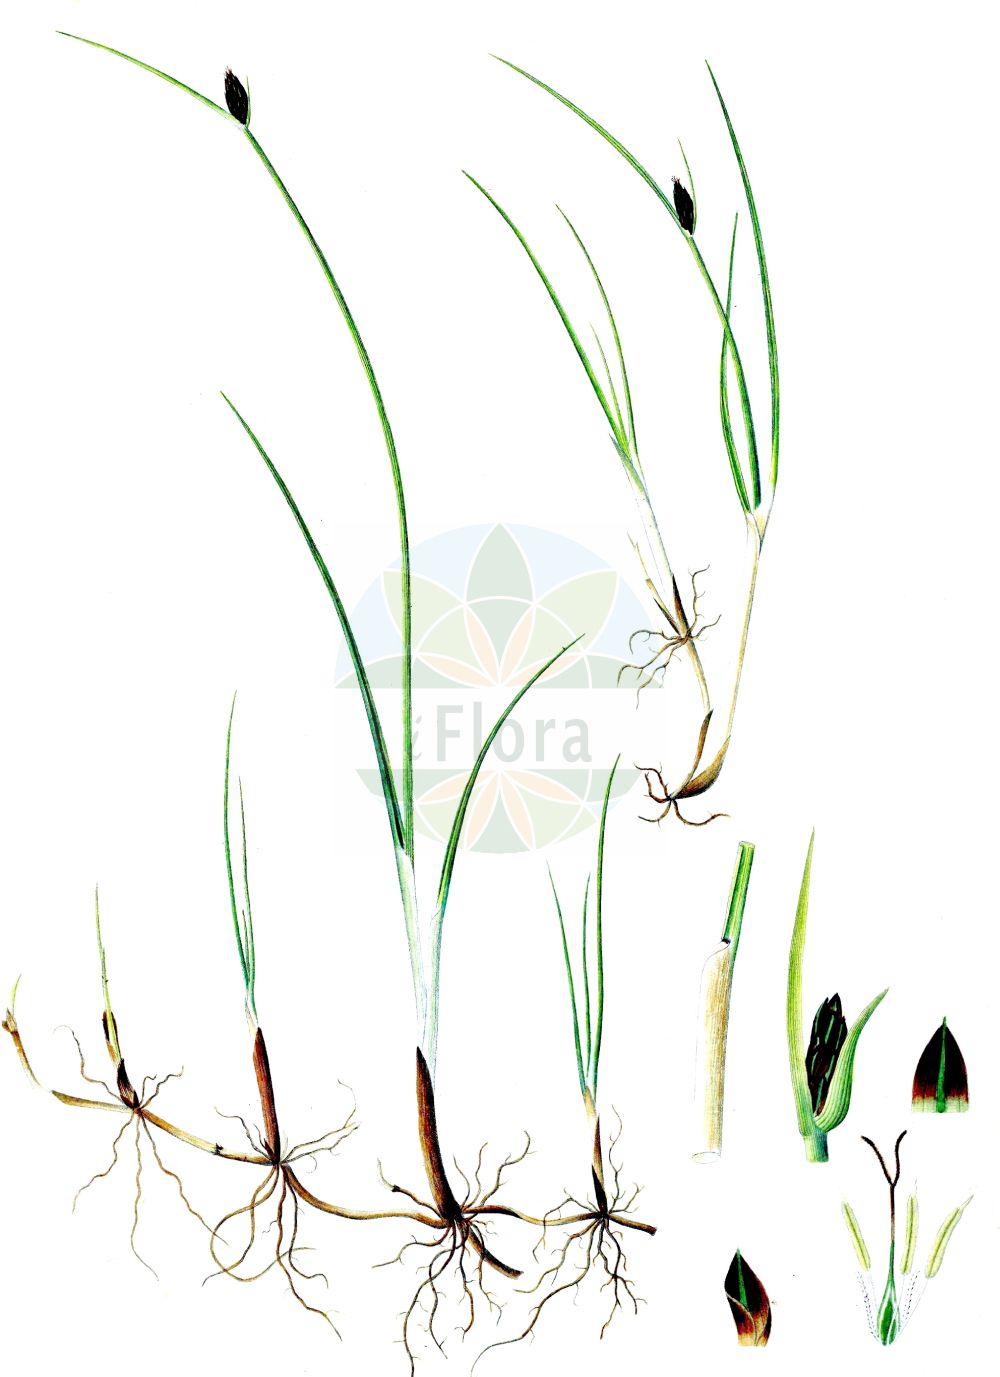 Historische Abbildung von Blysmopsis rufa (Rote Quellbinse - Saltmarsh Flat-Sedge). Das Bild zeigt Blatt, Bluete, Frucht und Same. ---- Historical Drawing of Blysmopsis rufa (Rote Quellbinse - Saltmarsh Flat-Sedge). The image is showing leaf, flower, fruit and seed.(Blysmopsis rufa,Rote Quellbinse,Saltmarsh Flat-Sedge,Blysmopsis rufa,Blysmus rufus,Schoenus rufus,Scirpus rufus,Rote Quellbinse,Rotbraunes Quellried,Saltmarsh Flat-Sedge,Red Bulrush,Blysmopsis,Cyperaceae,Sauergräser,Sedge family,Blatt,Bluete,Frucht,Same,leaf,flower,fruit,seed,Oeder (1761-1883))